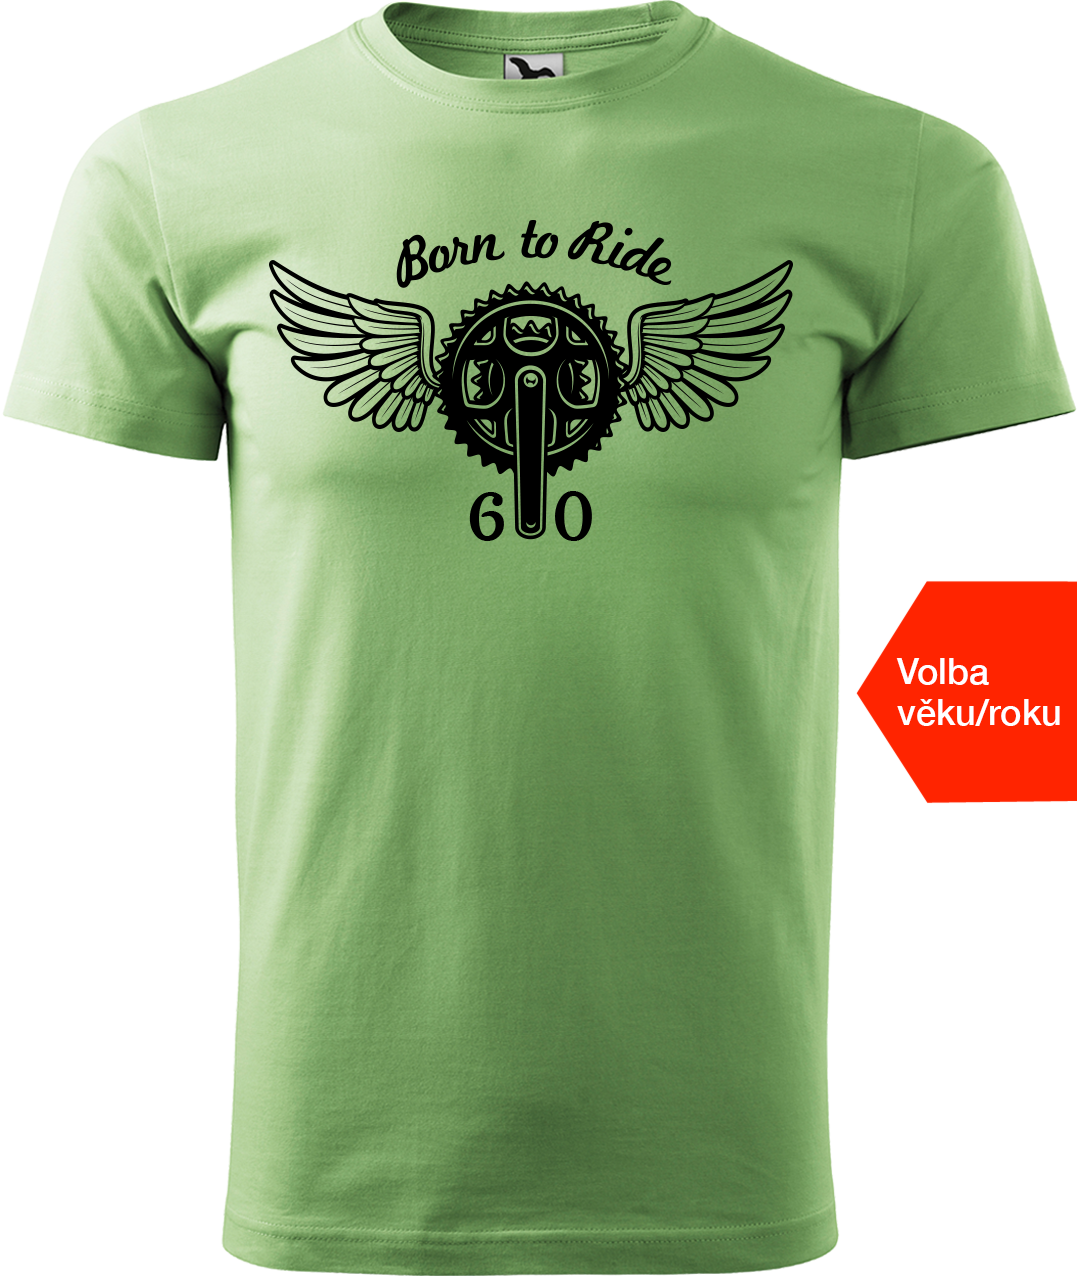 Pánské tričko pro cyklistu s věkem/rokem narození - Born to Ride (převodník) Velikost: S, Barva: Trávově zelená (39)